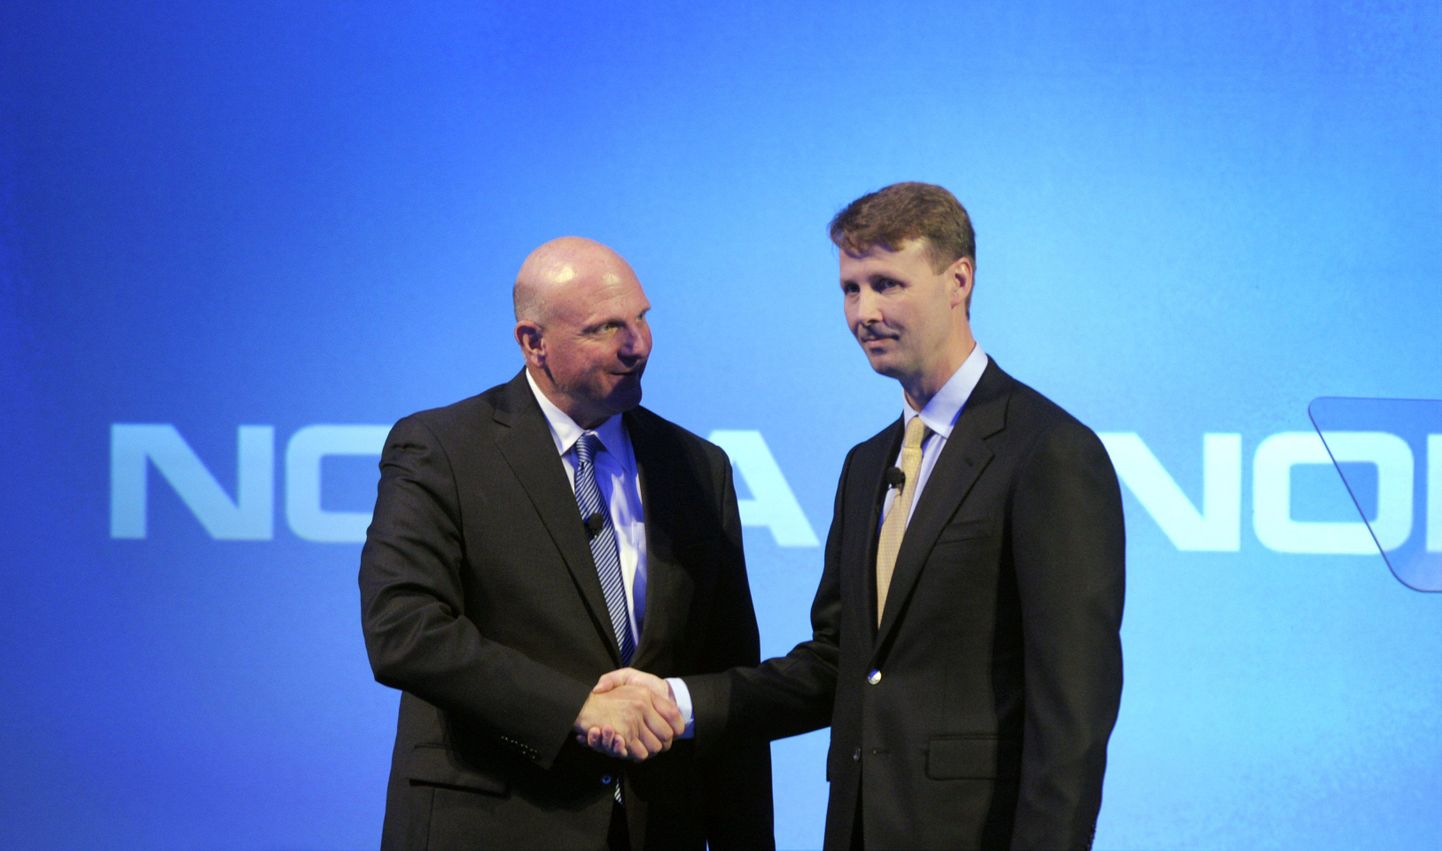 Microsofti tegevjuht Steve Ballmer (vasakul) ja Nokia nõukogu esimees ning ajutine tegevjuht Risto Siilasmaa (paremal) eile Espoos toimunud pressikonverentsil.